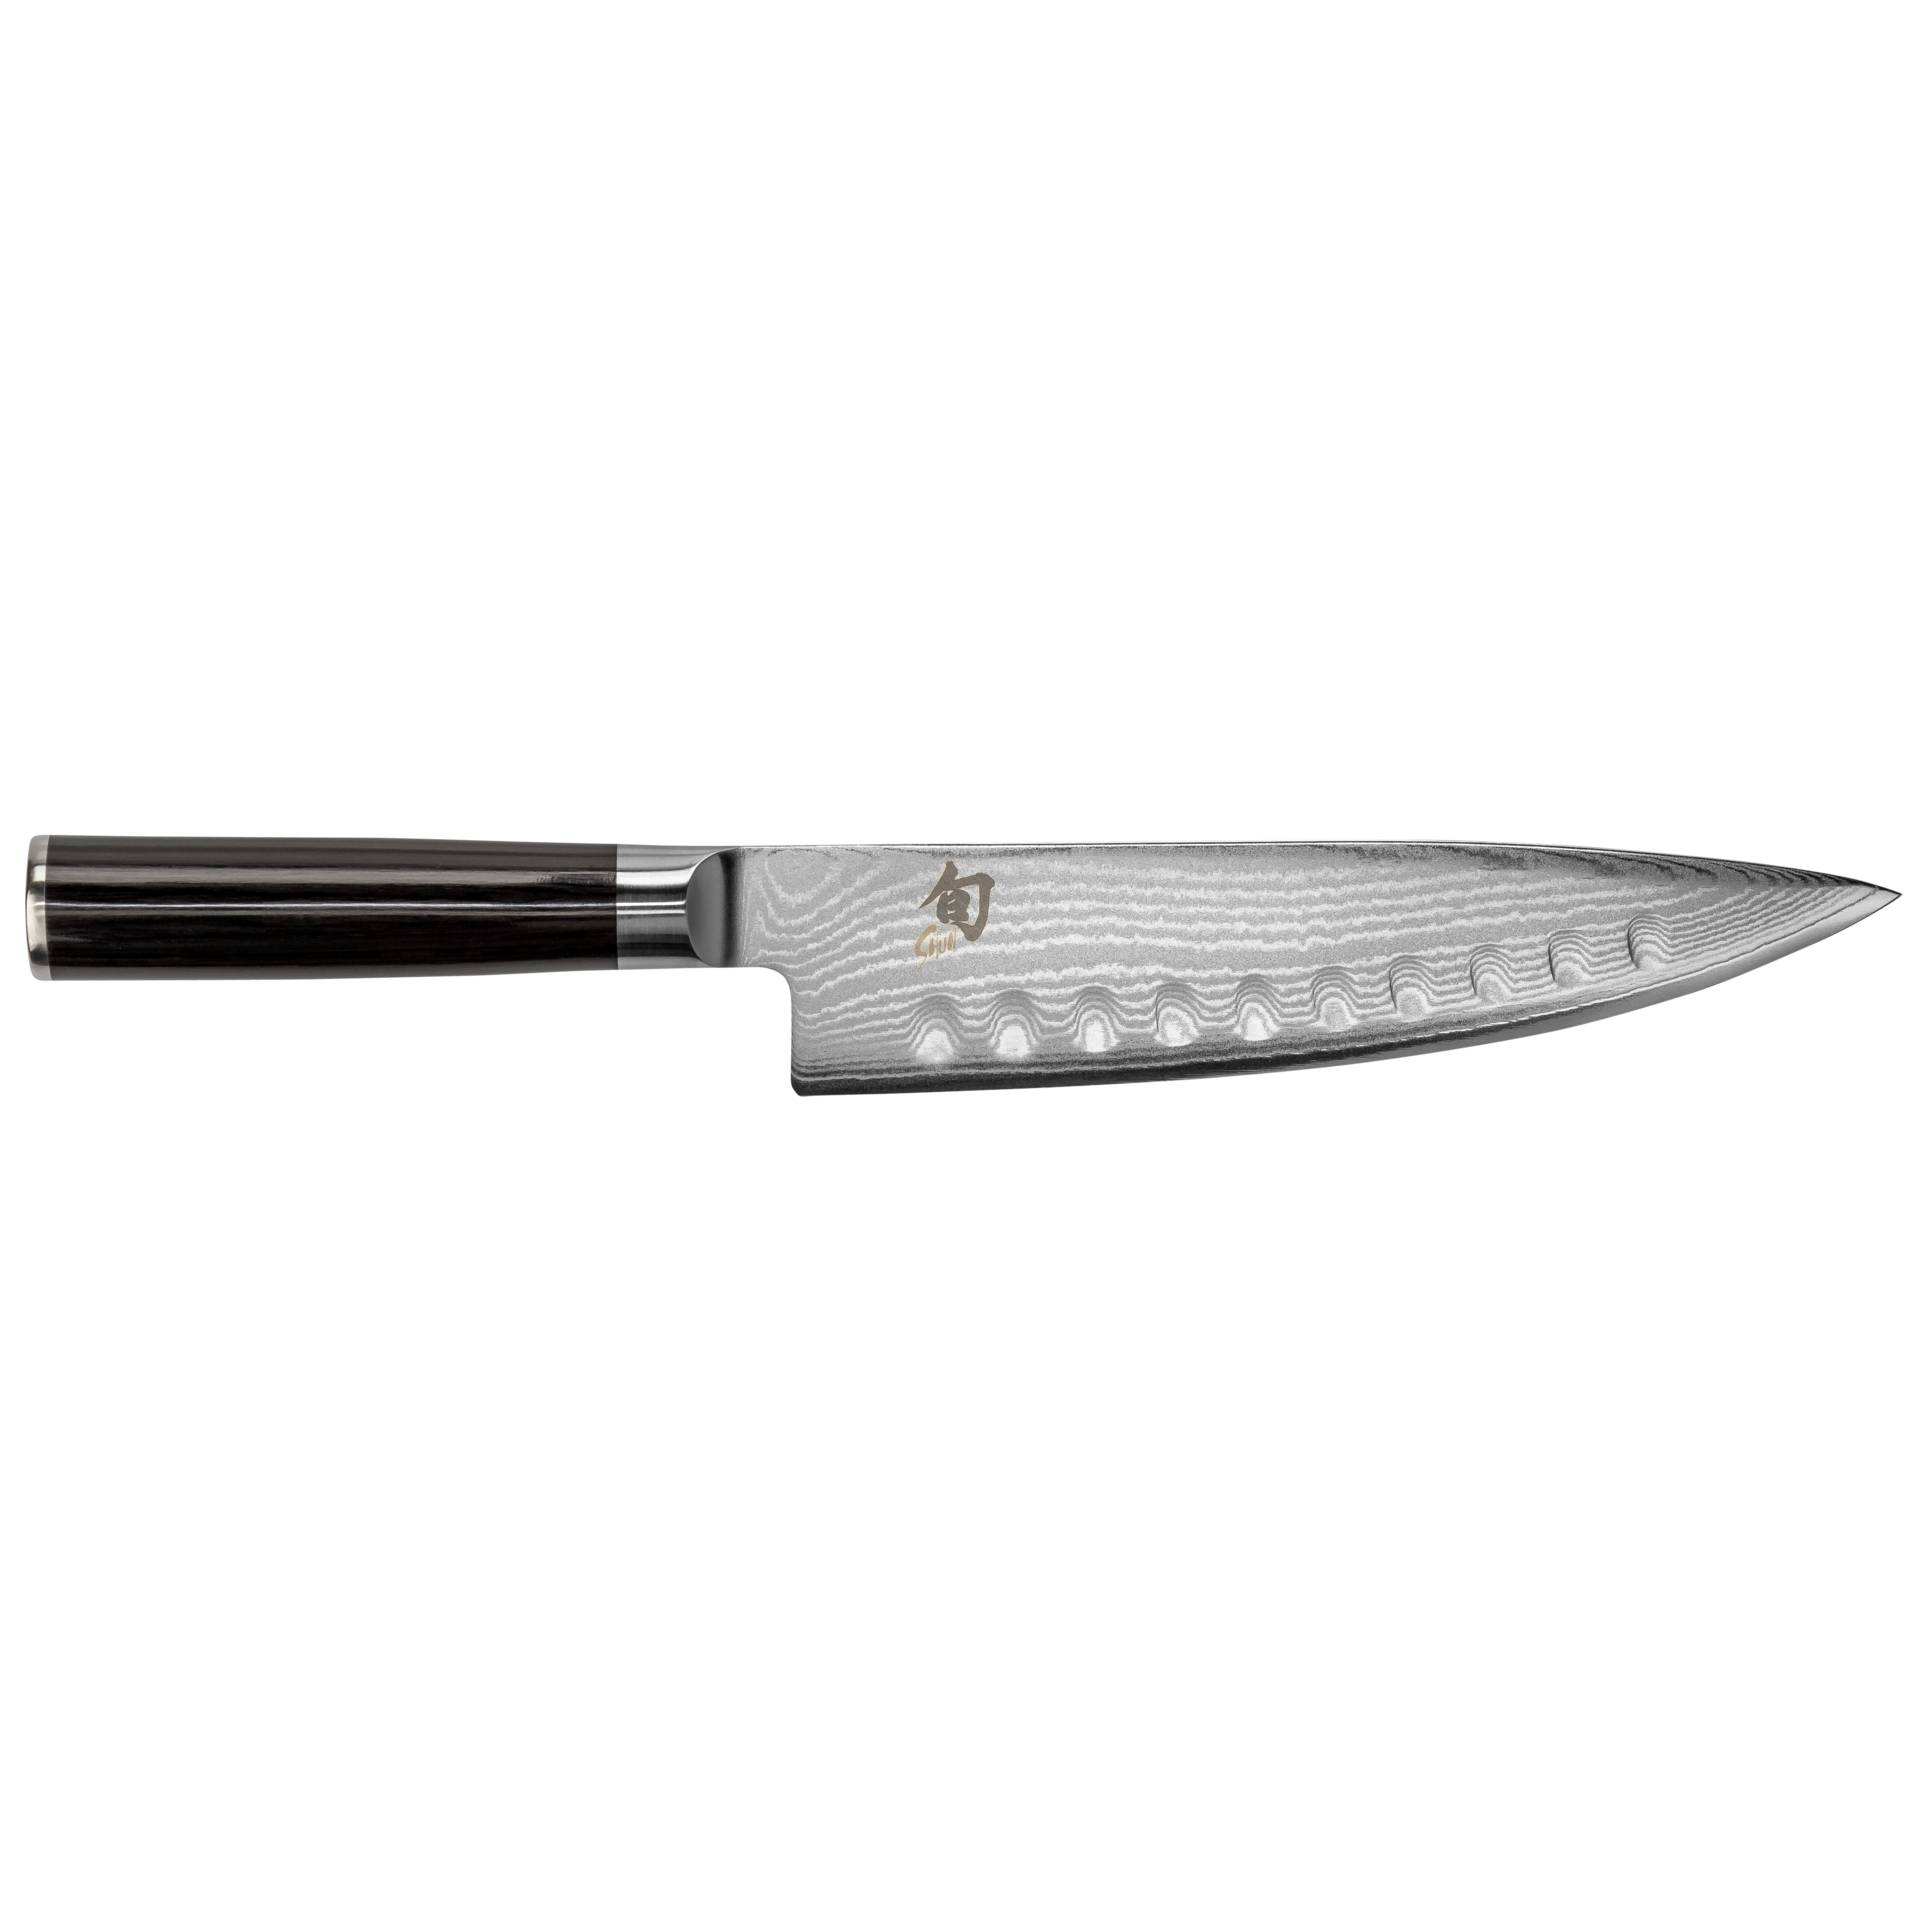 KAI Shun cooking knife Damascus blade, 20 cm